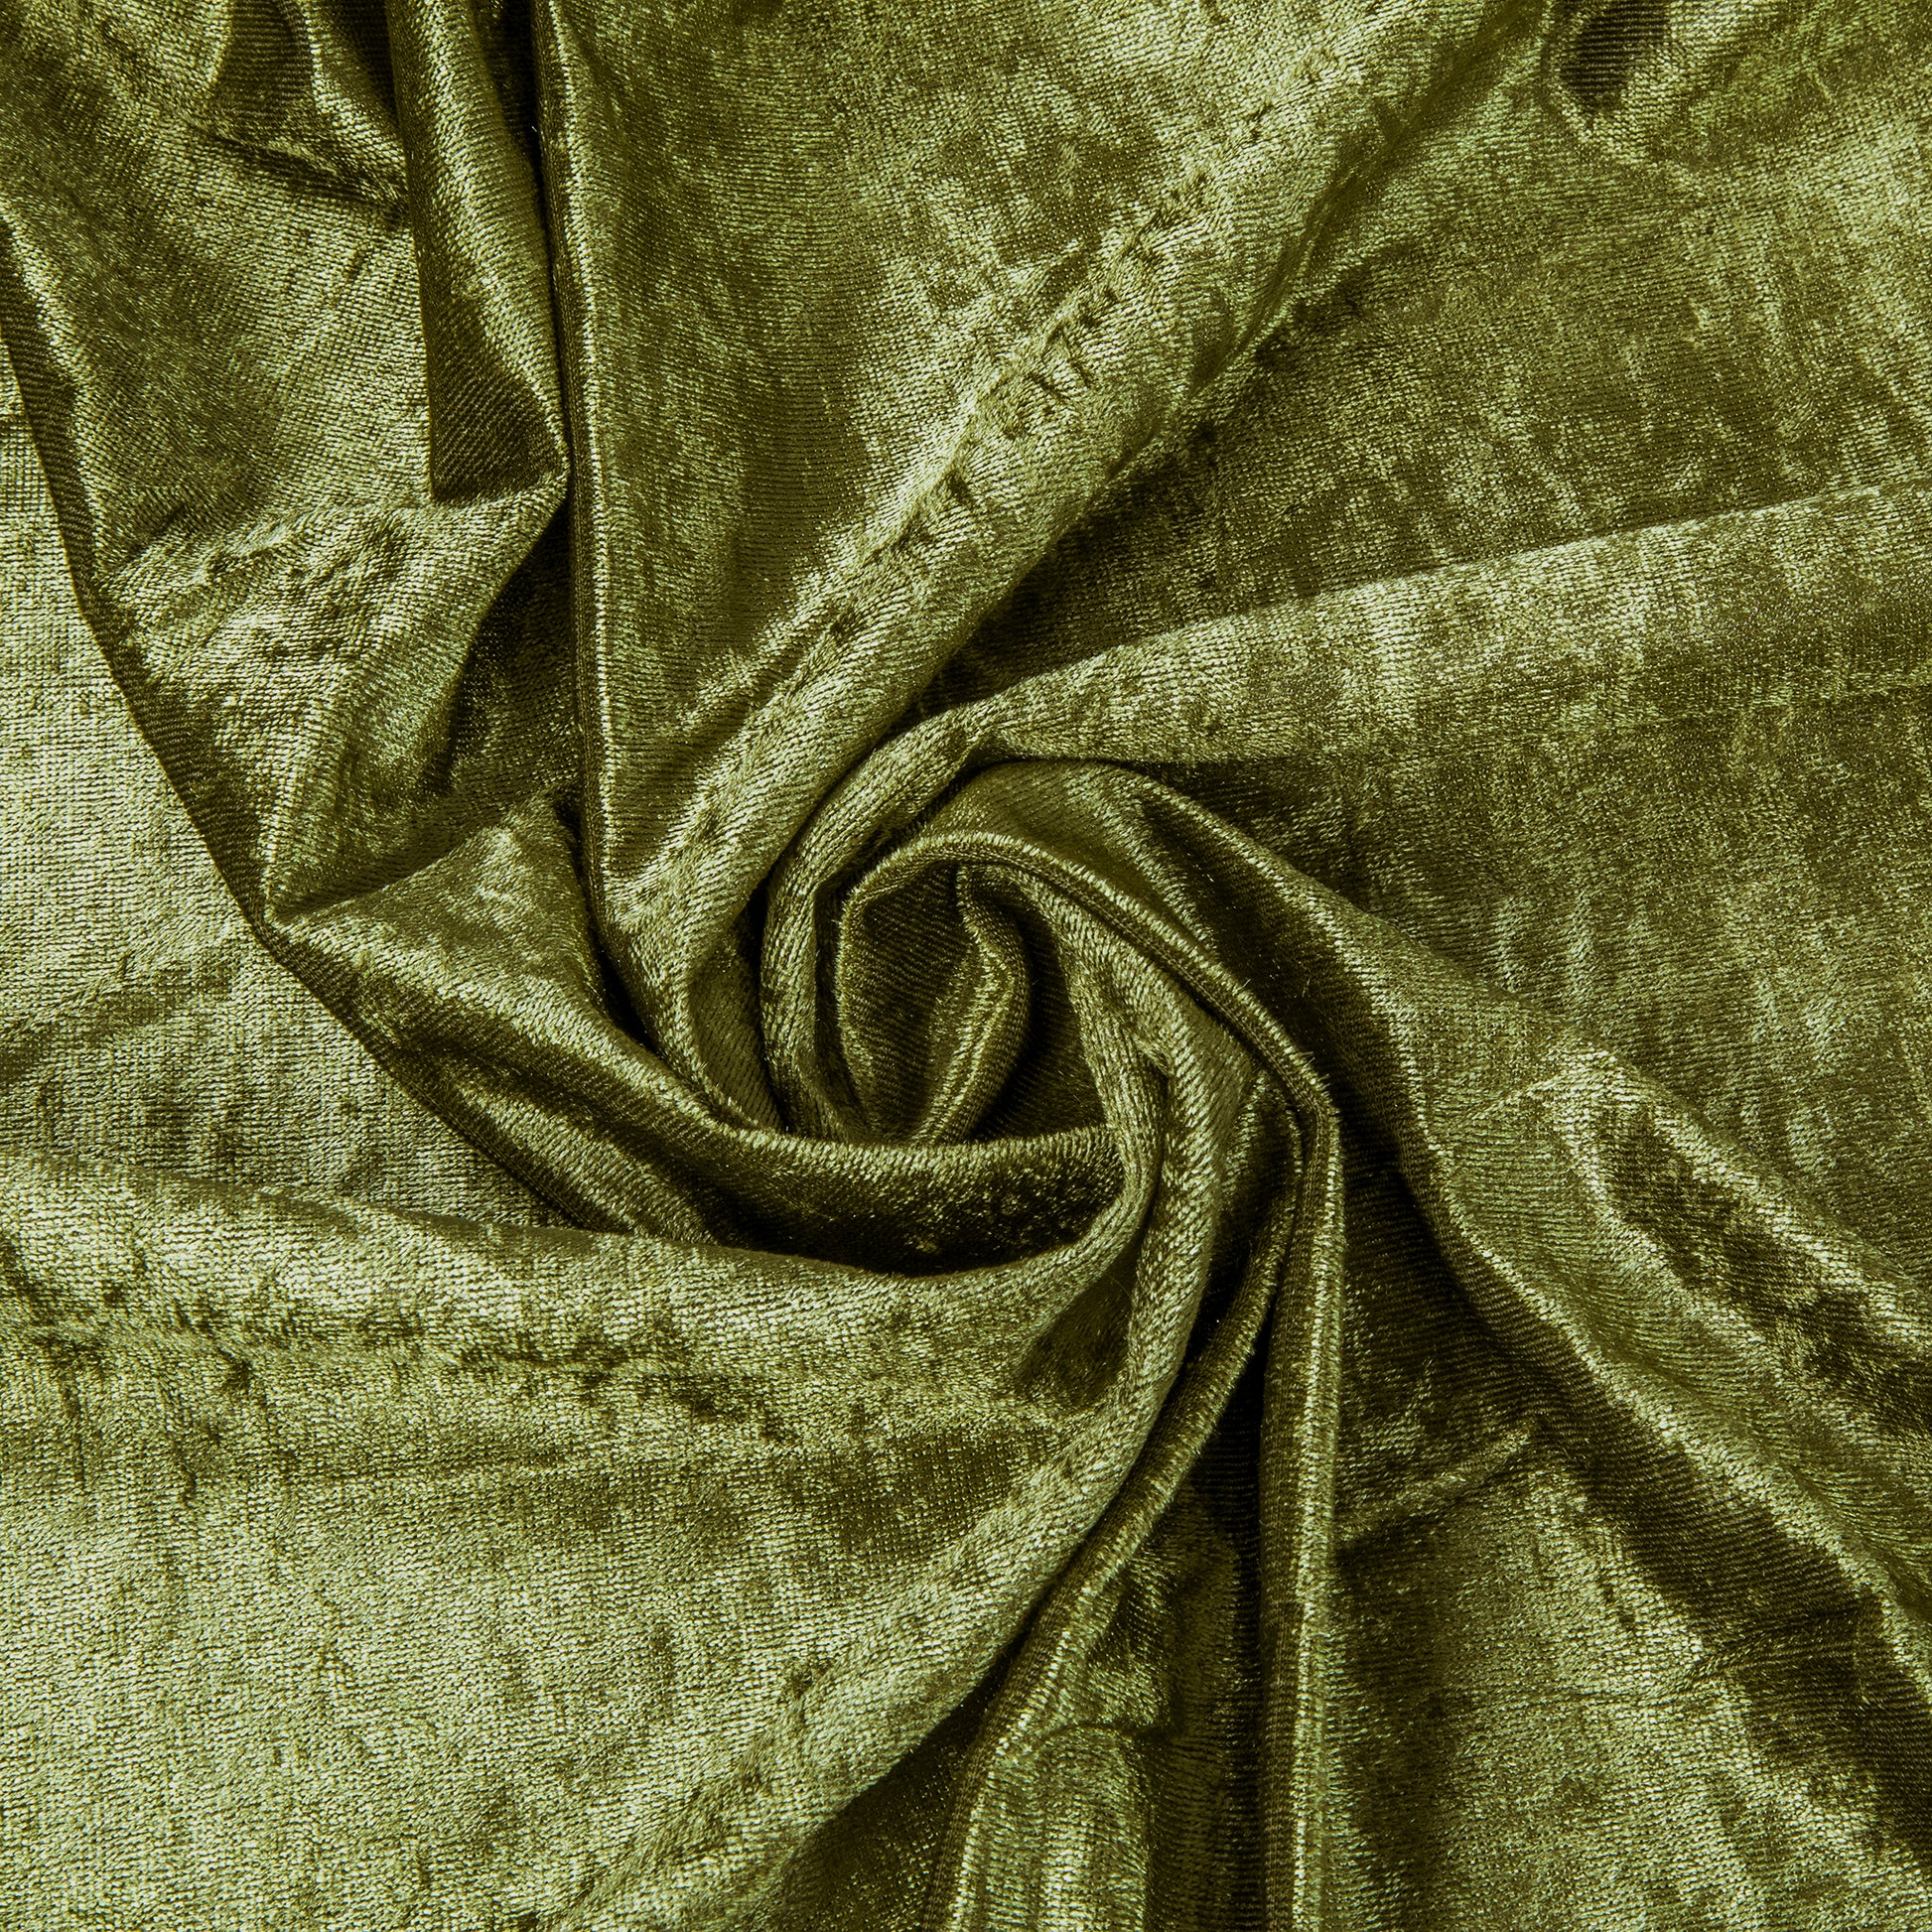 Velvet 14ft H x 52" W Drape/Backdrop Curtain Panel - Olive Green